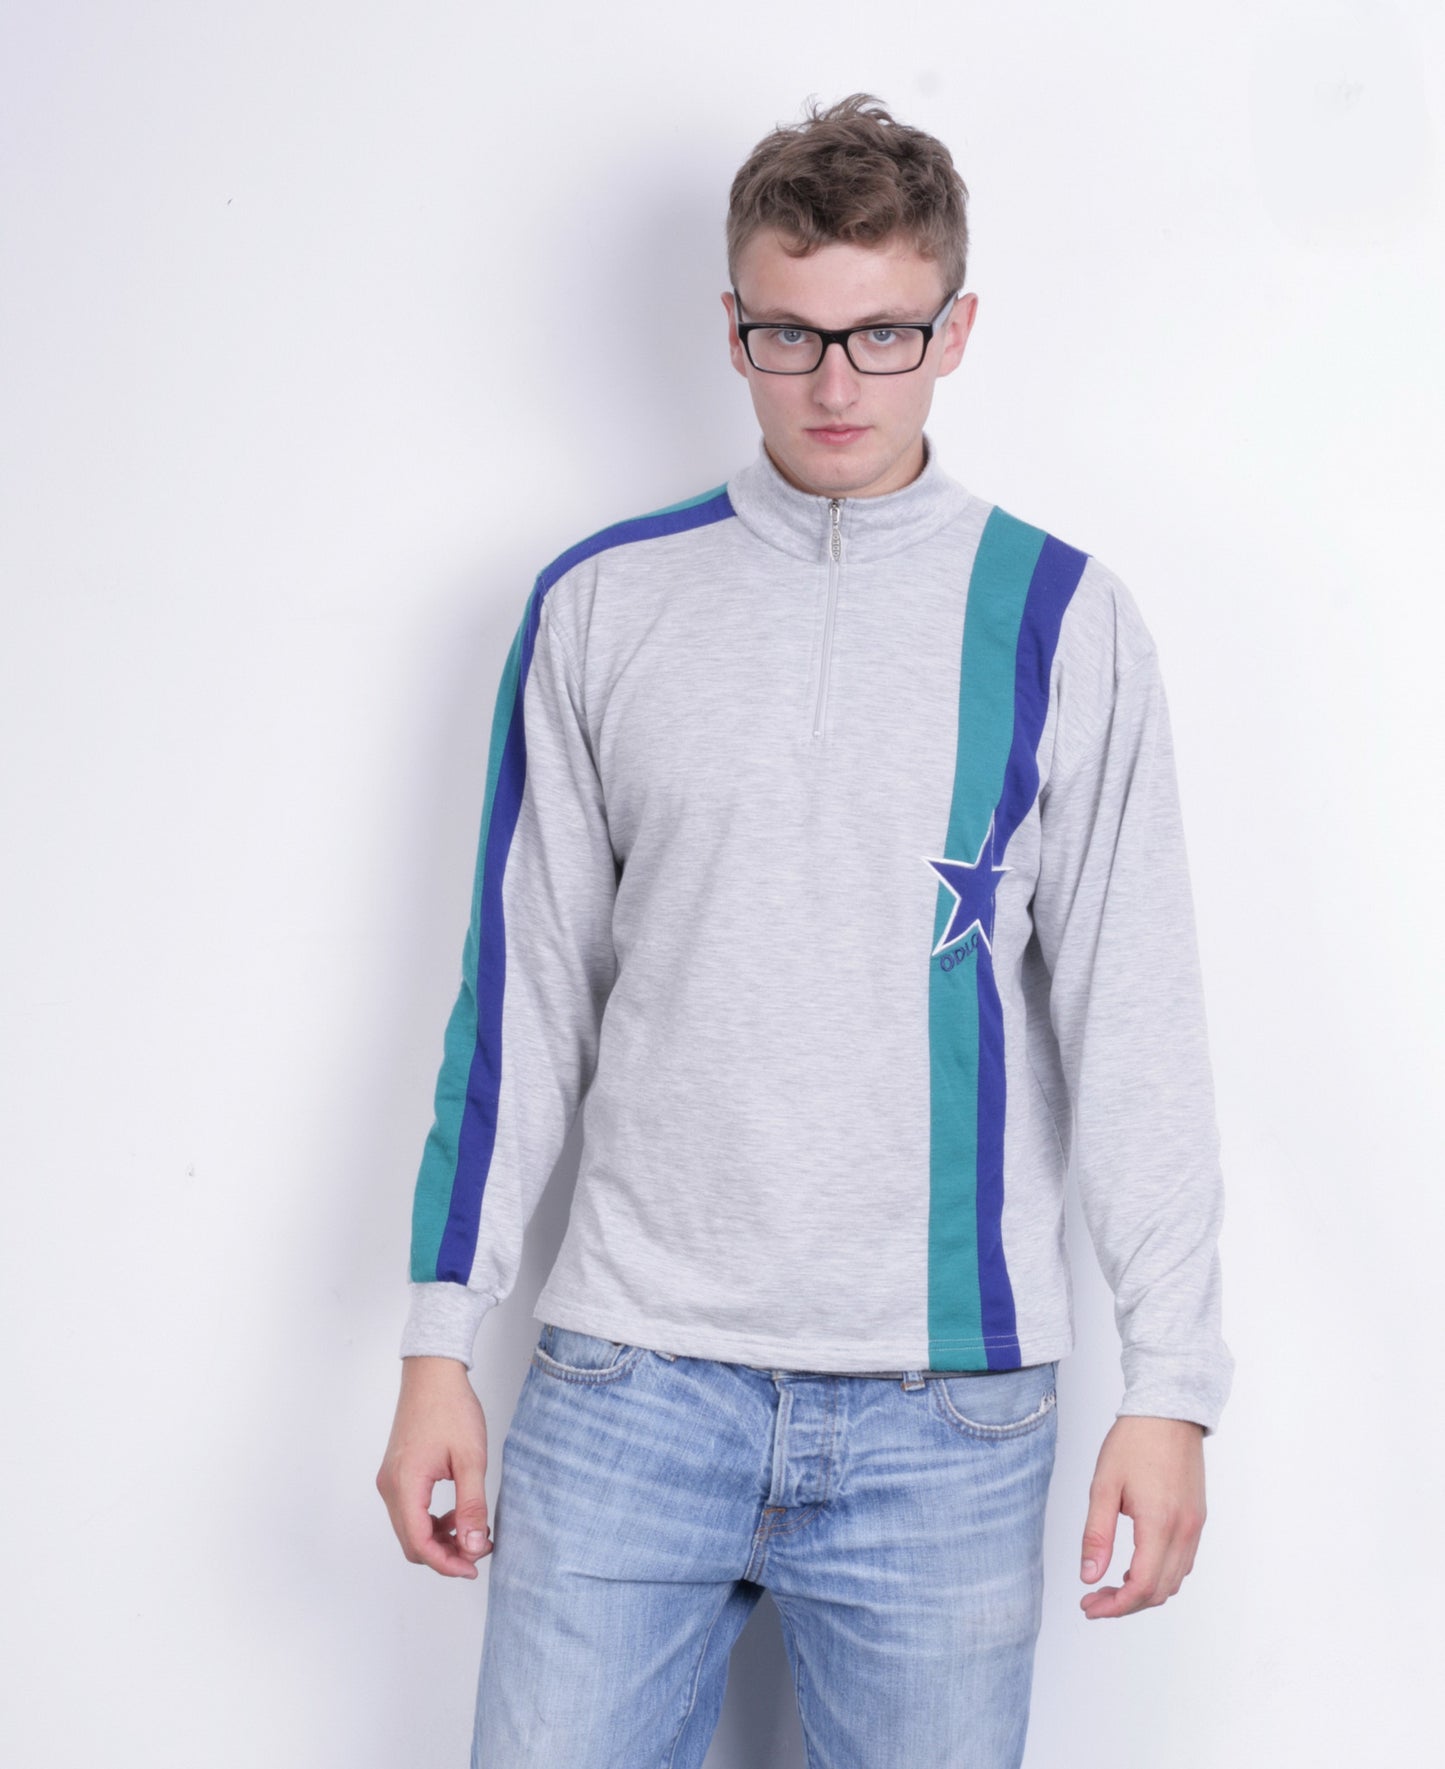 Odlo Mens L Sweatshirt Grey Jumper Sport Vintage 90s - RetrospectClothes